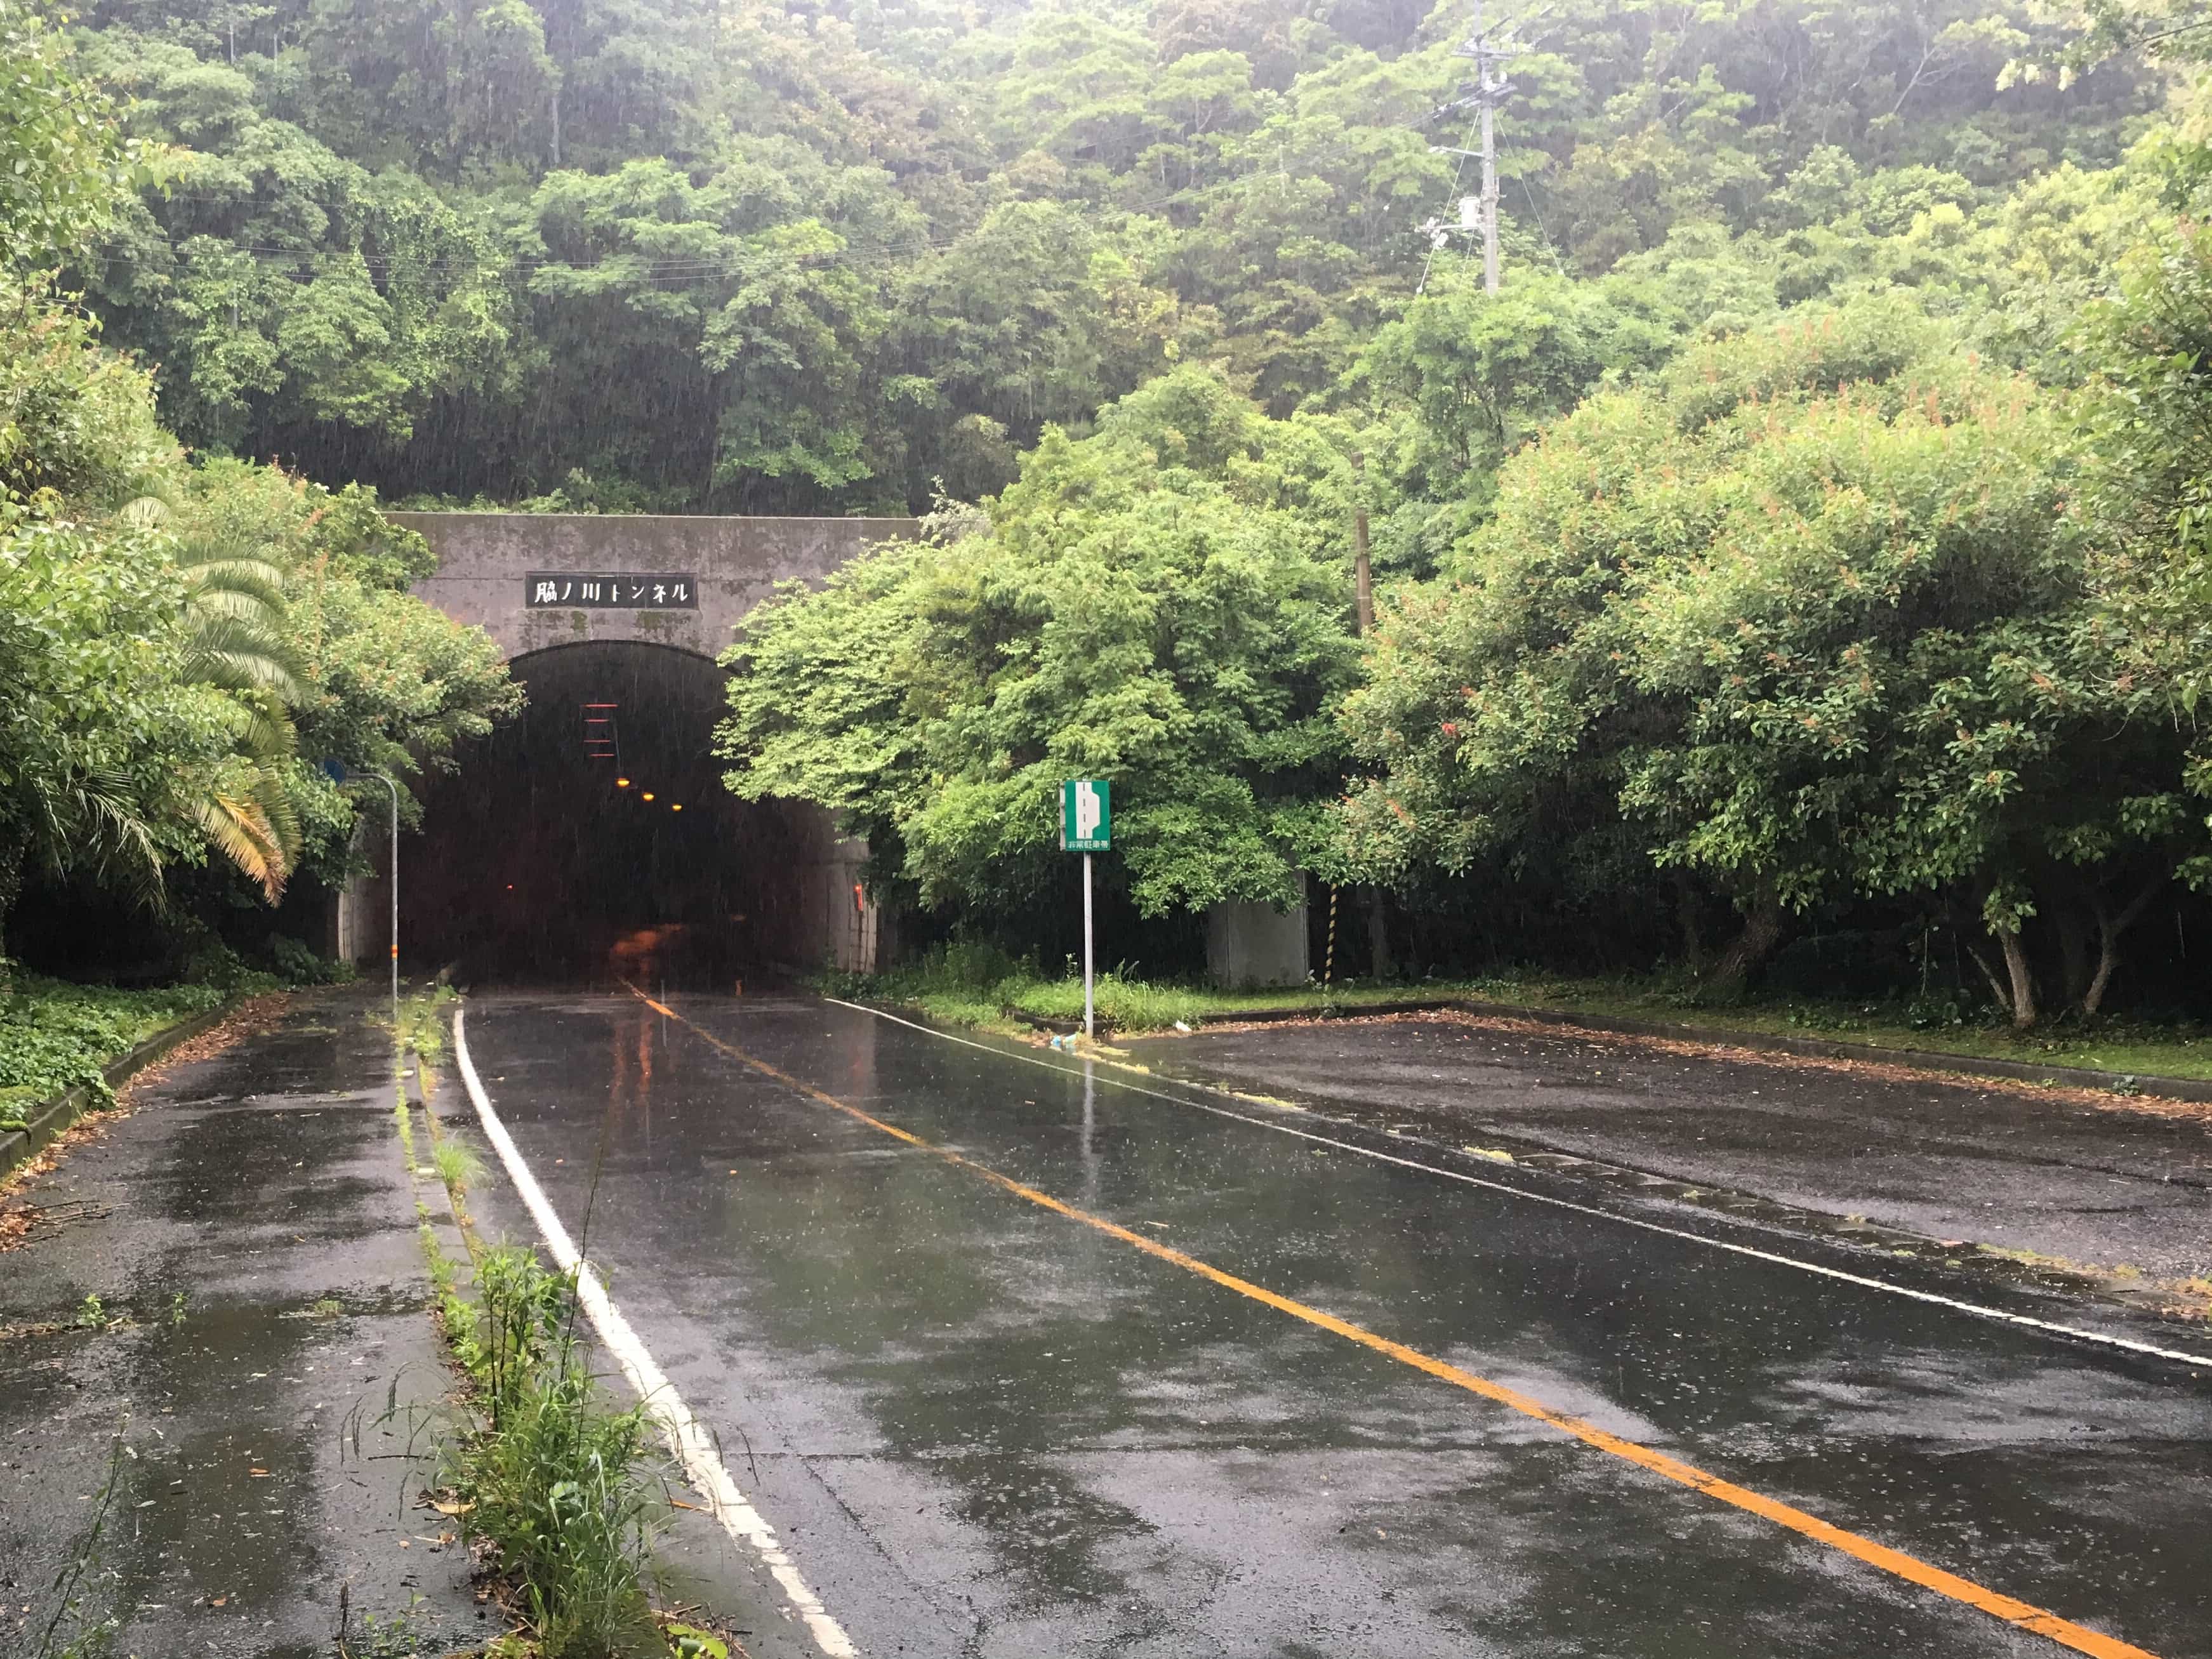 Outside tunnel in rain